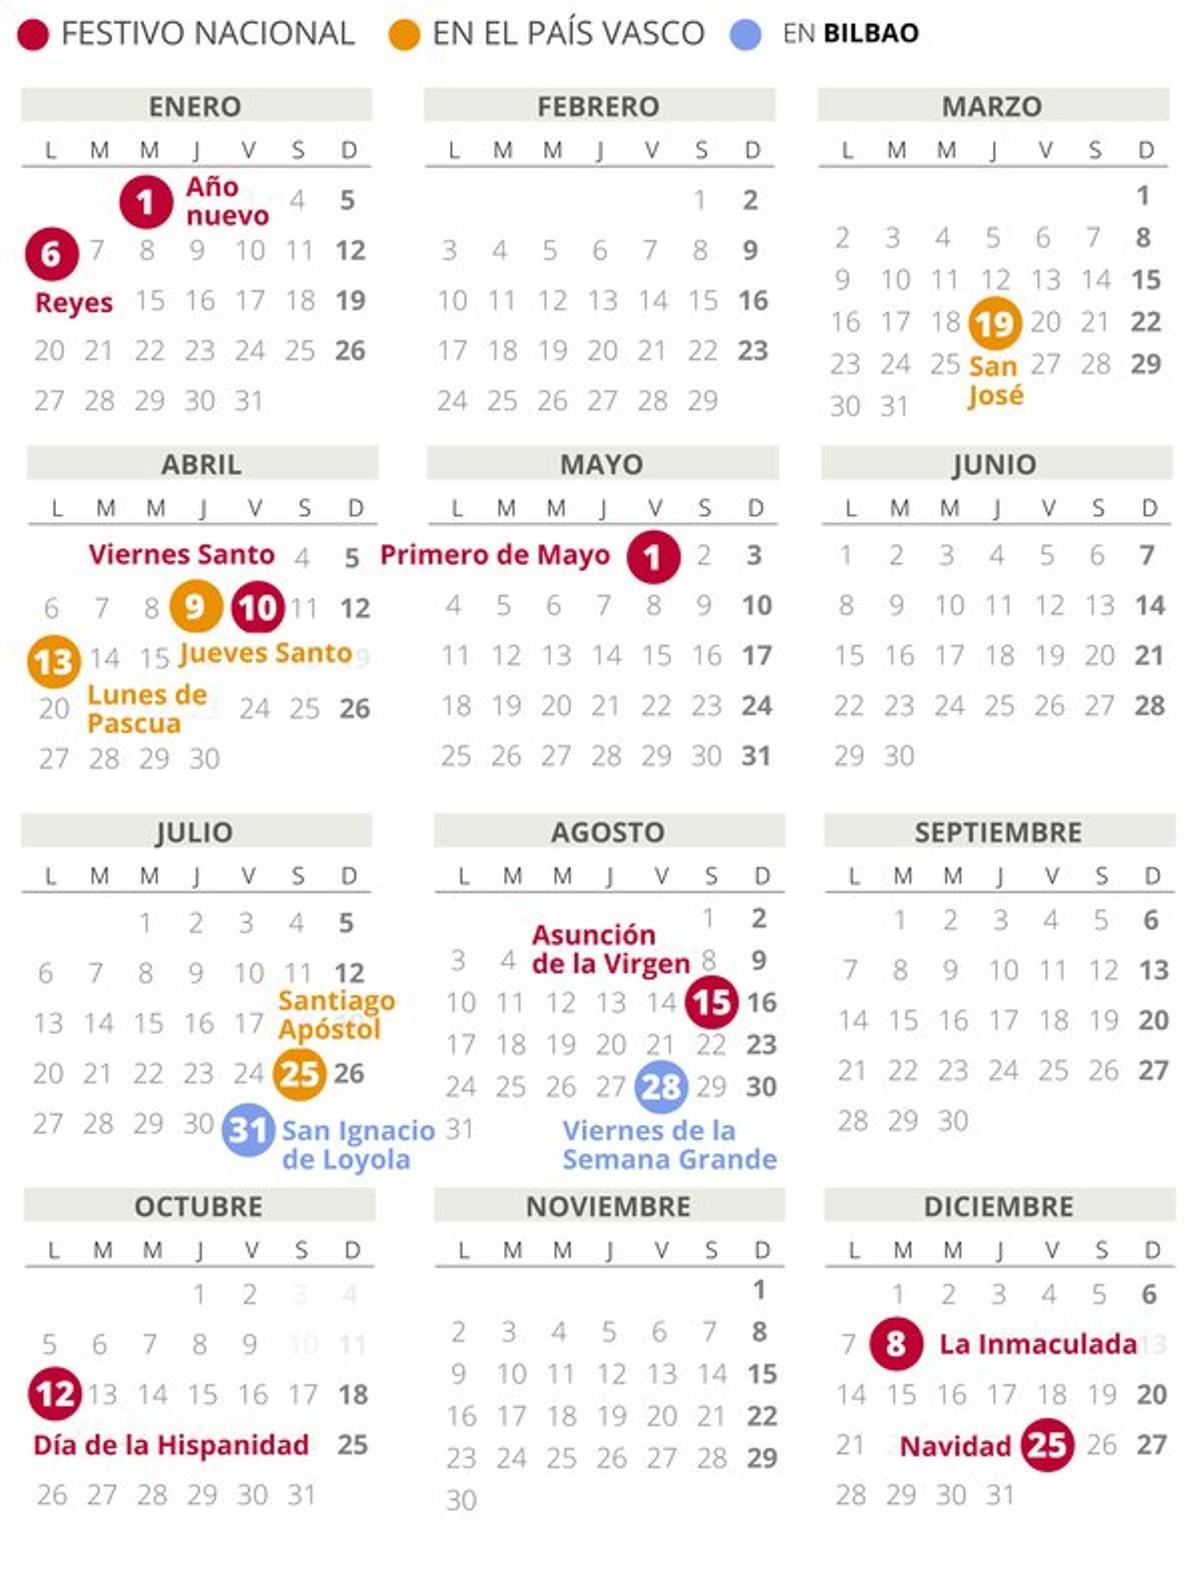 Calendario laboral de Bilbao del 2020